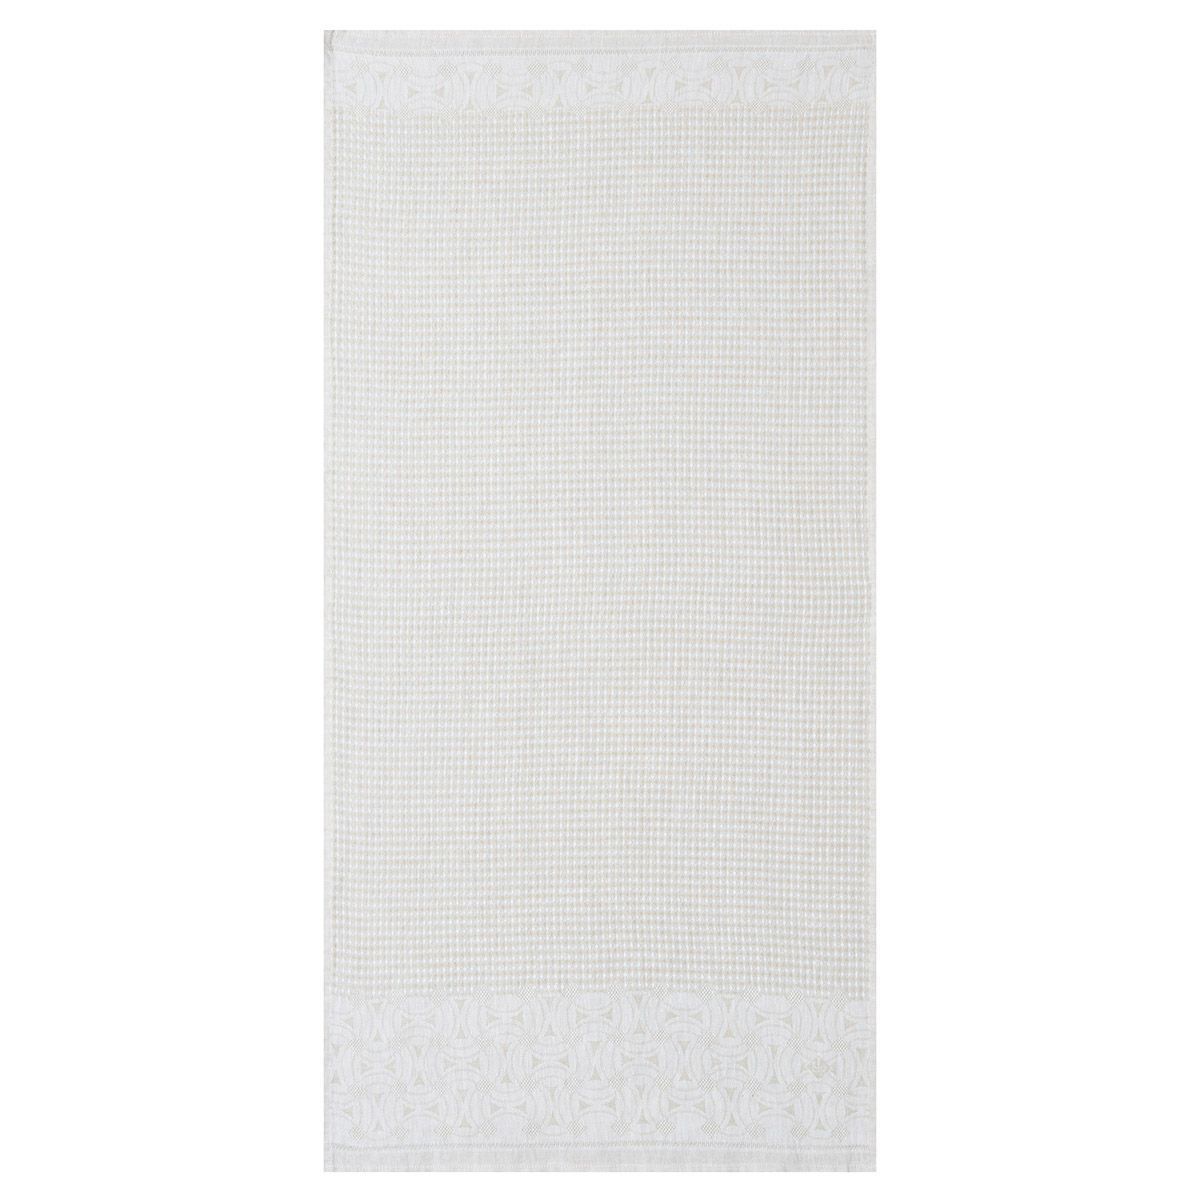 Lula Sand Linen Bath Towel Collection by Le Jacquard Français | Fig Linens